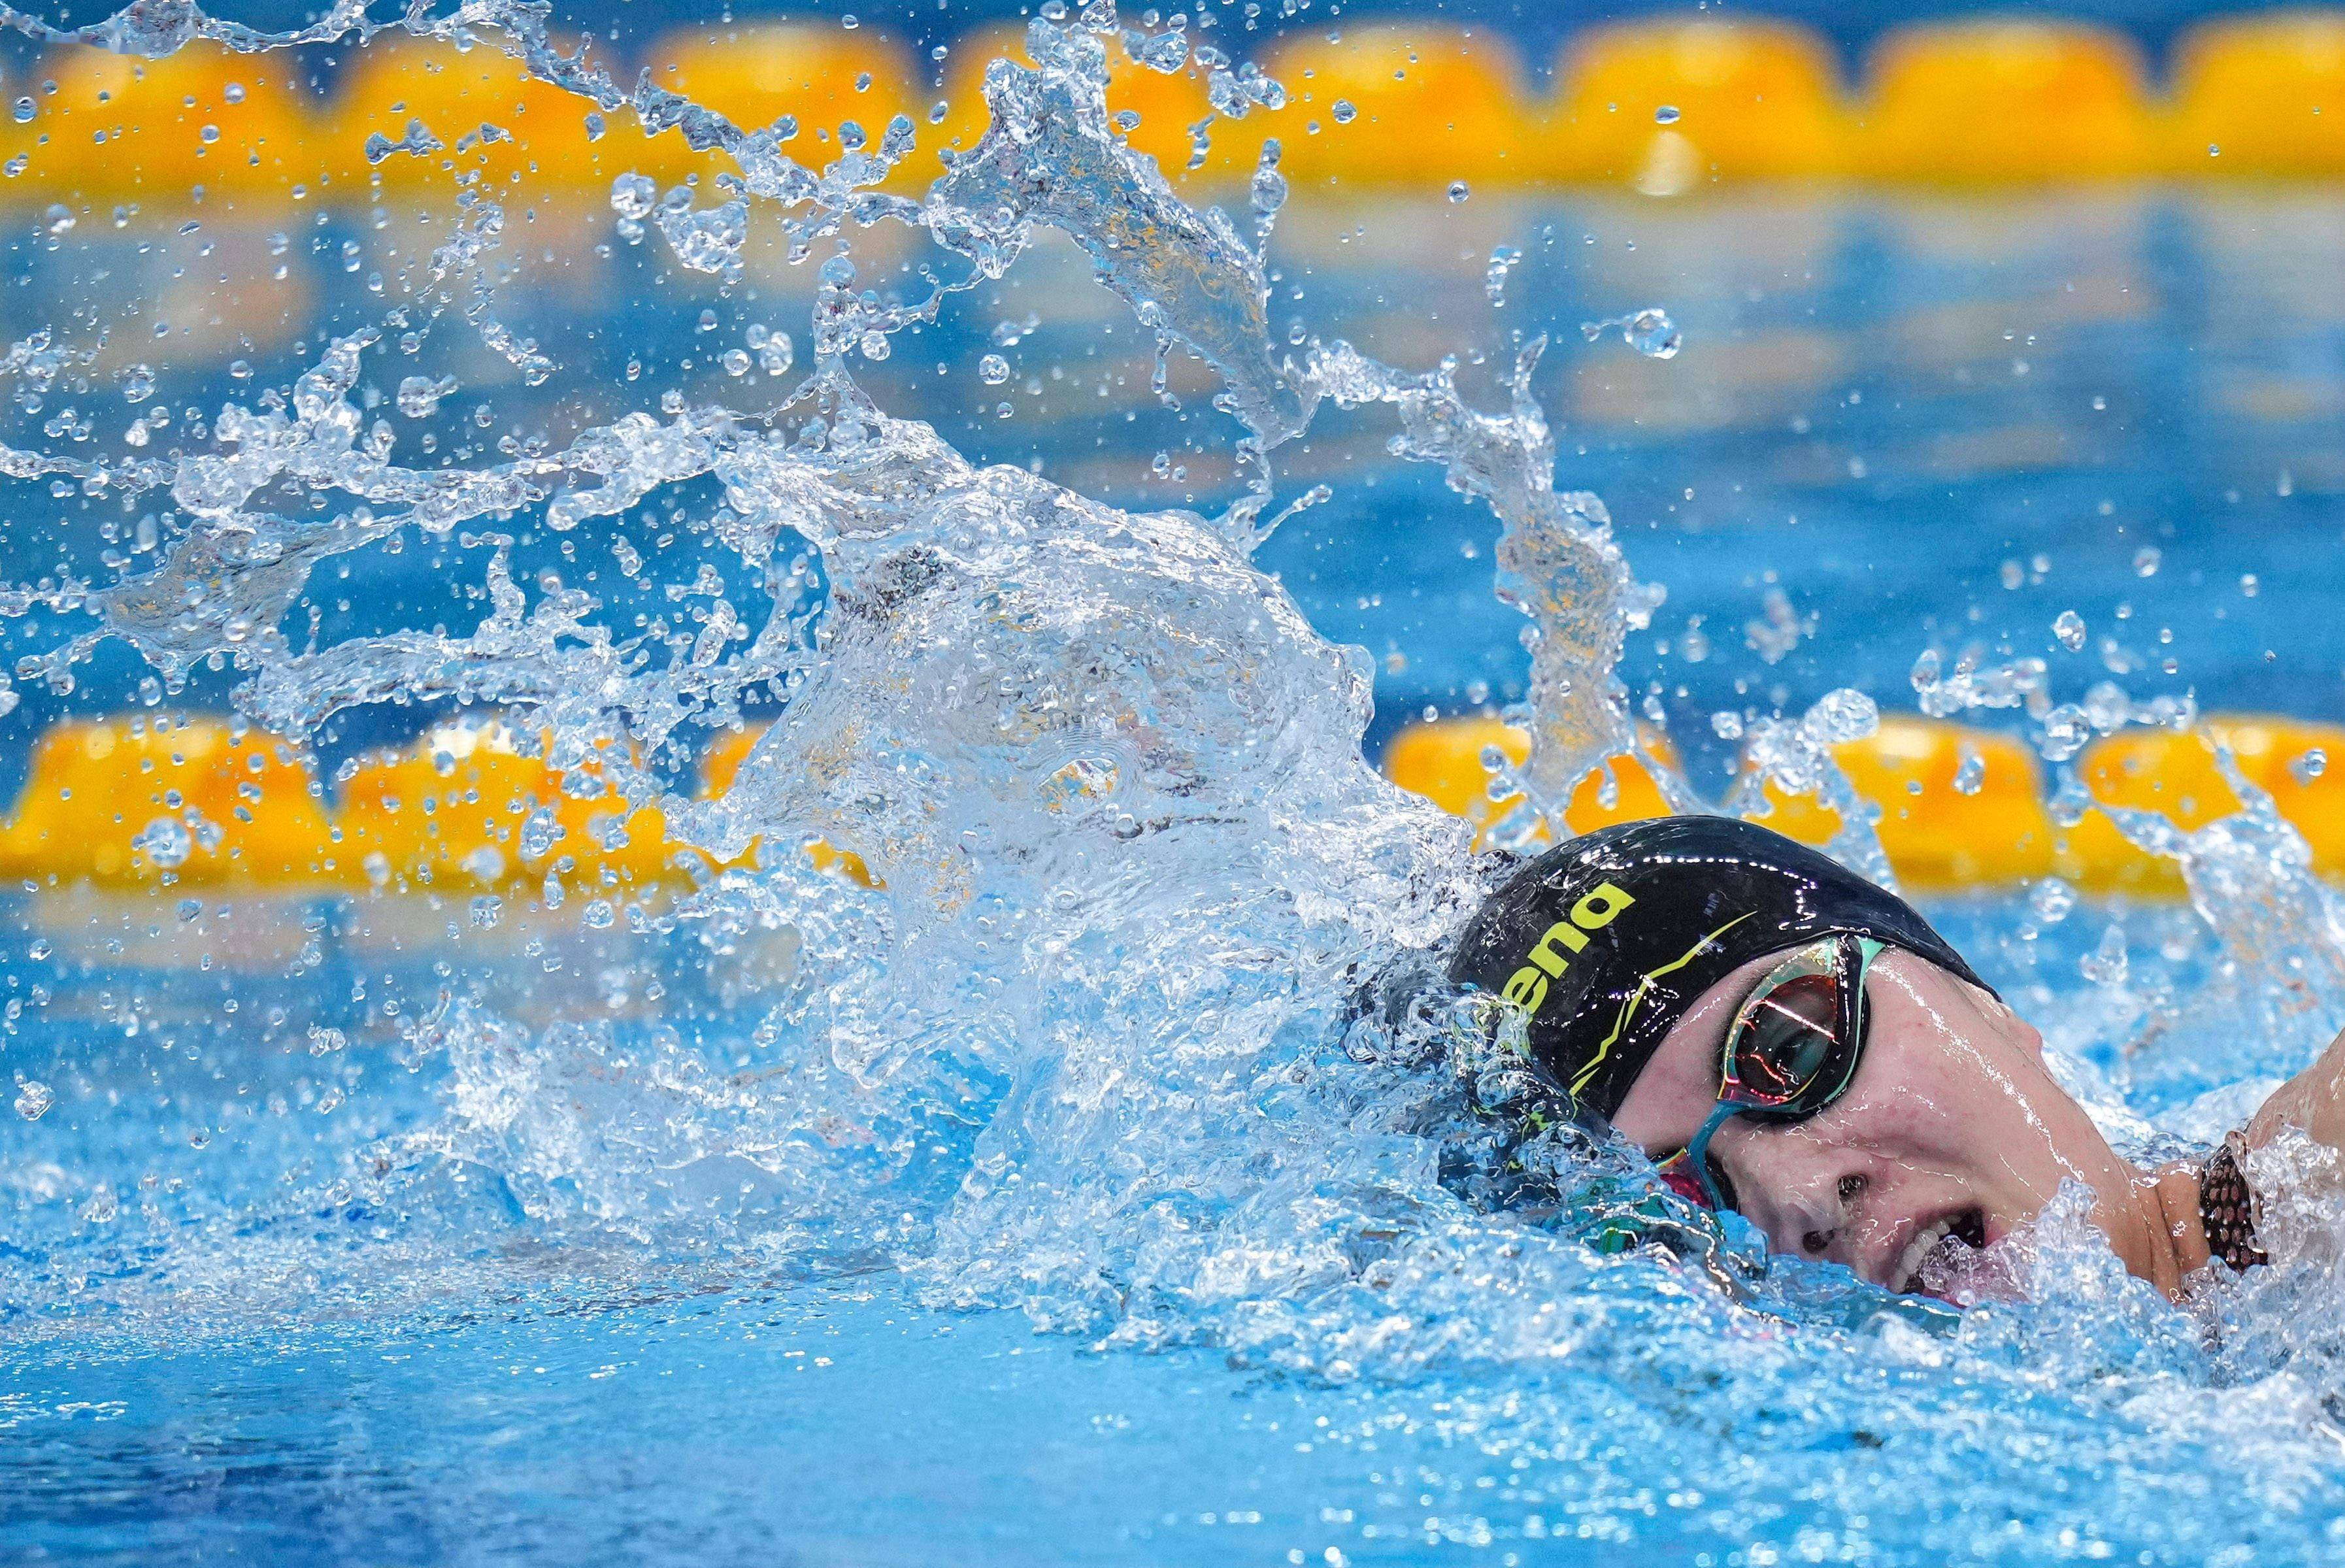 当日,在山东青岛举行的2021年全国游泳冠军赛暨东京奥运会选拔赛女子